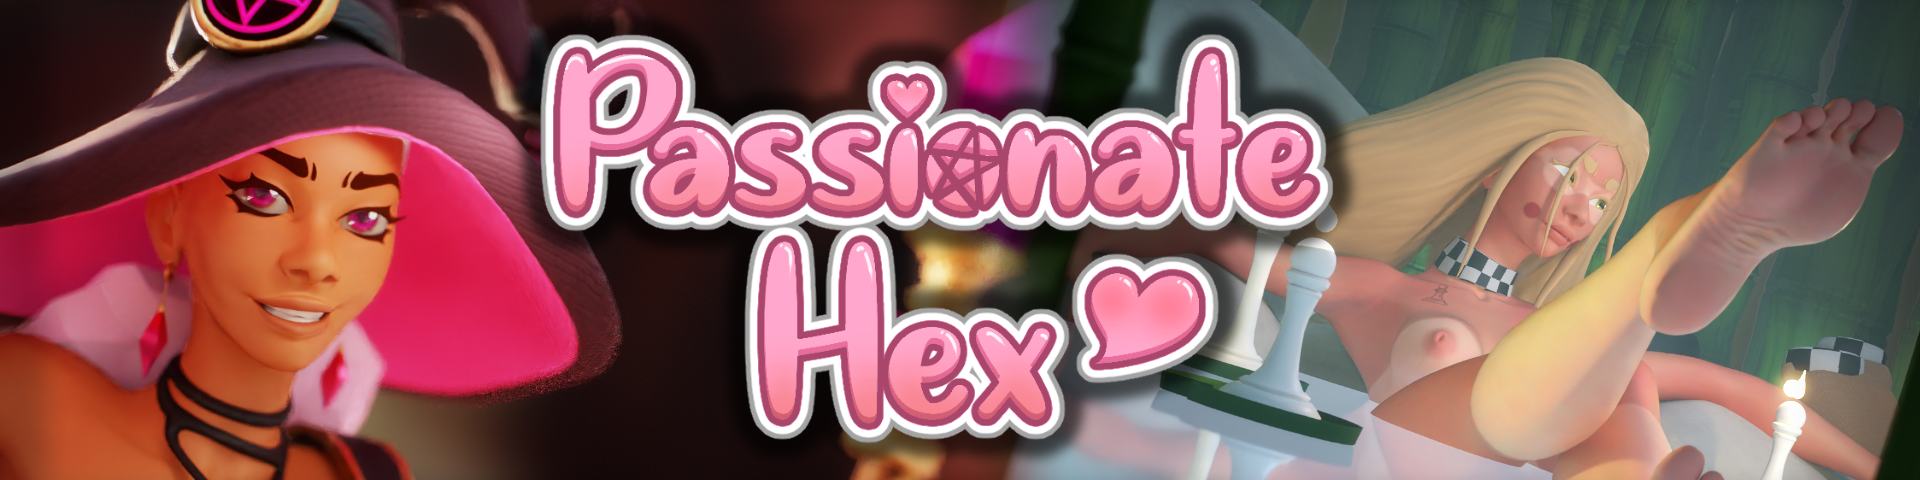 Passionate Hex